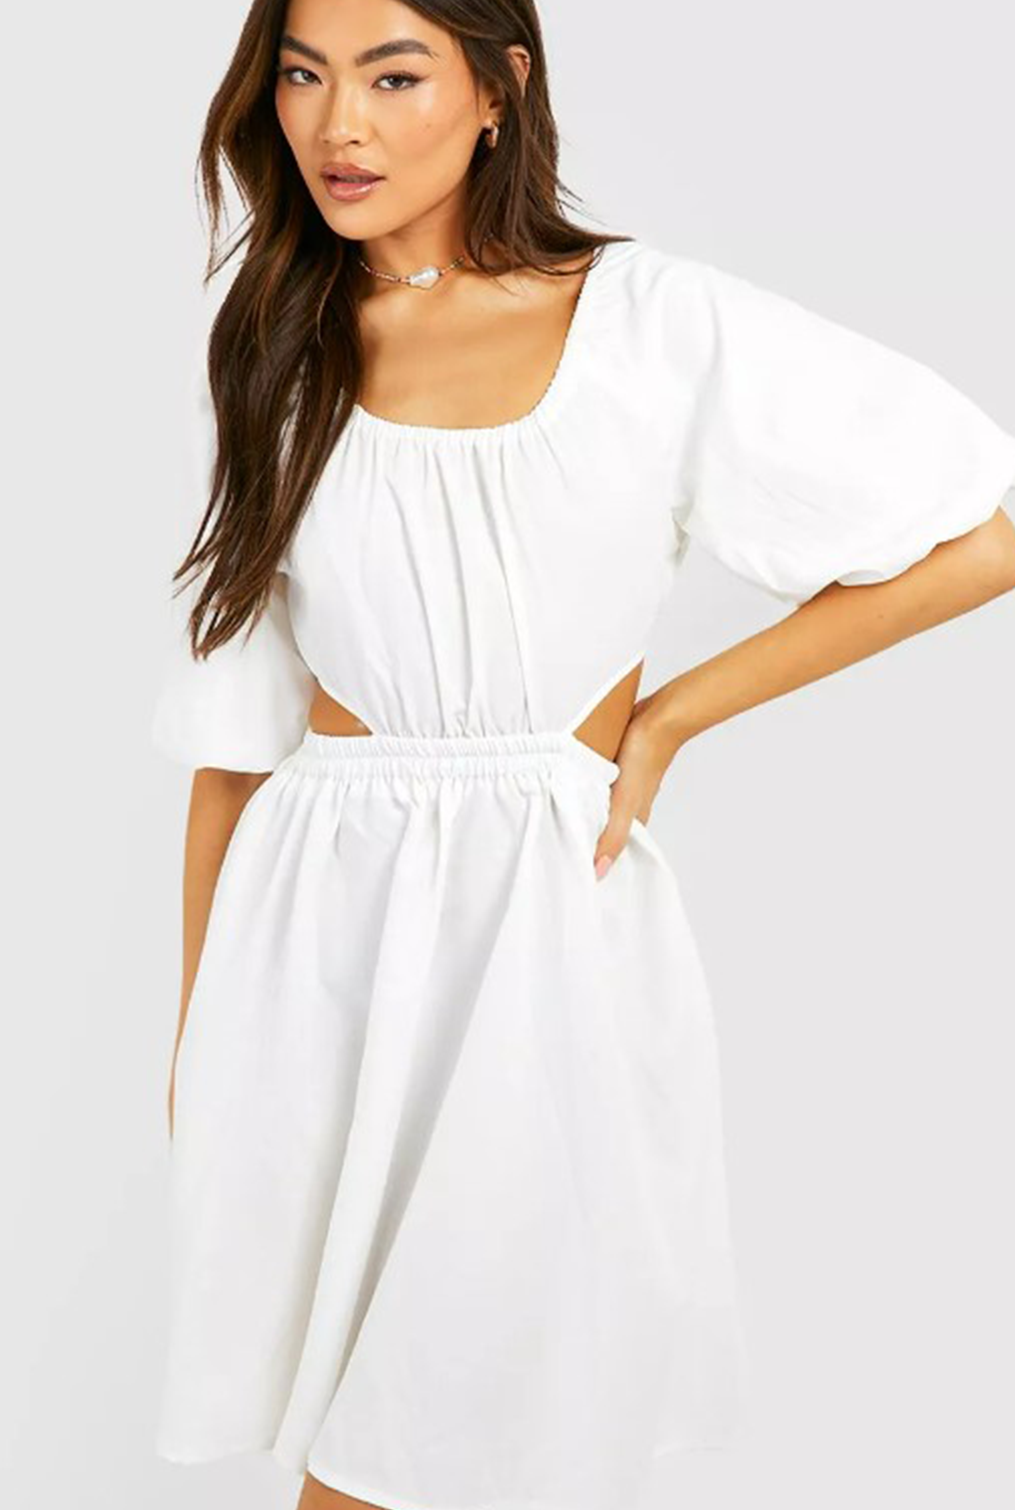 Nova White Dress